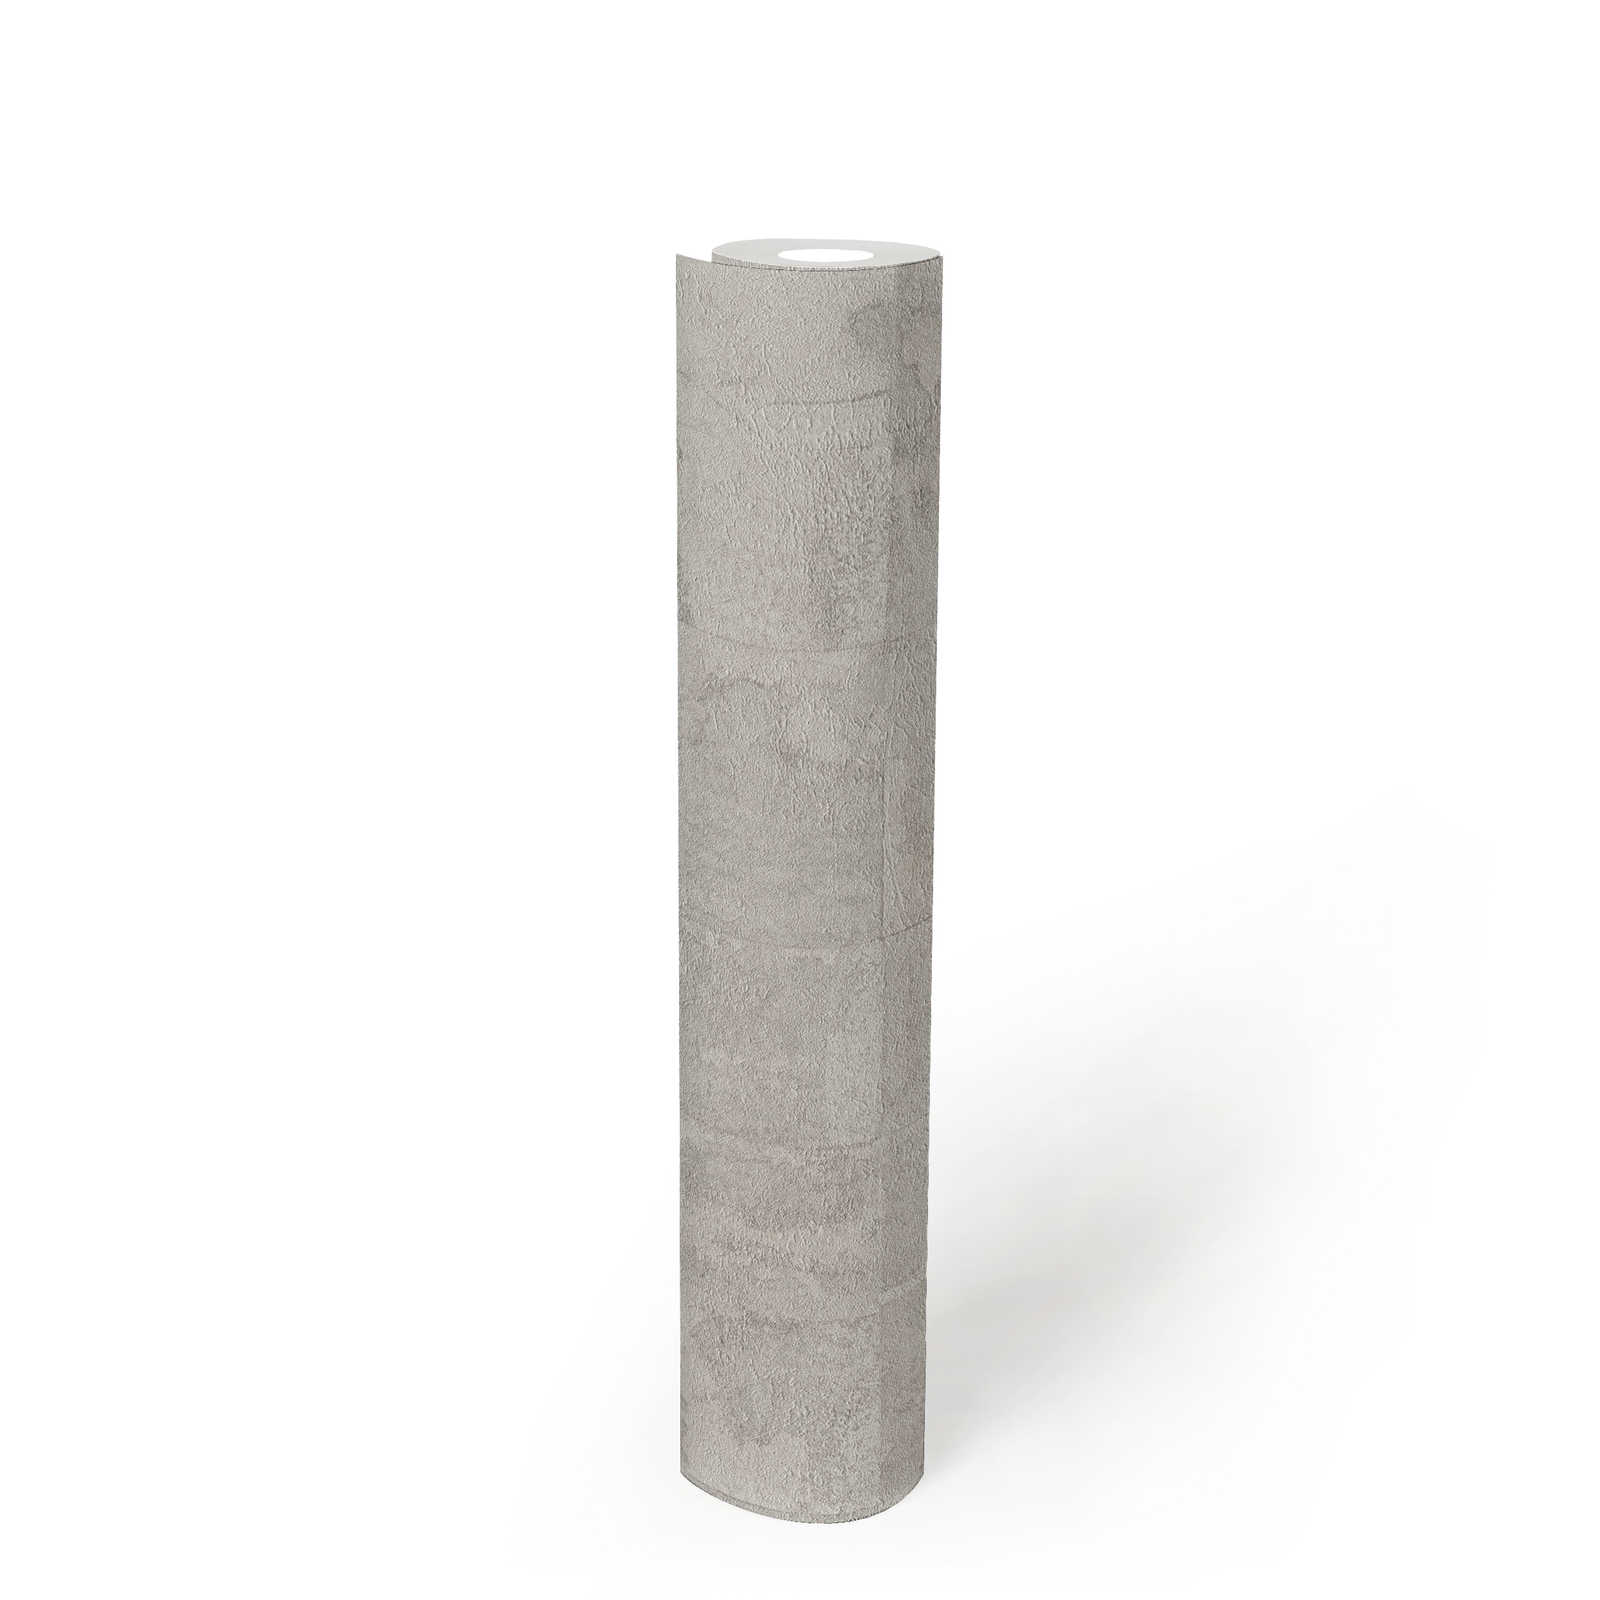             papier peint en papier structuré aspect carrelage - gris clair, argenté
        